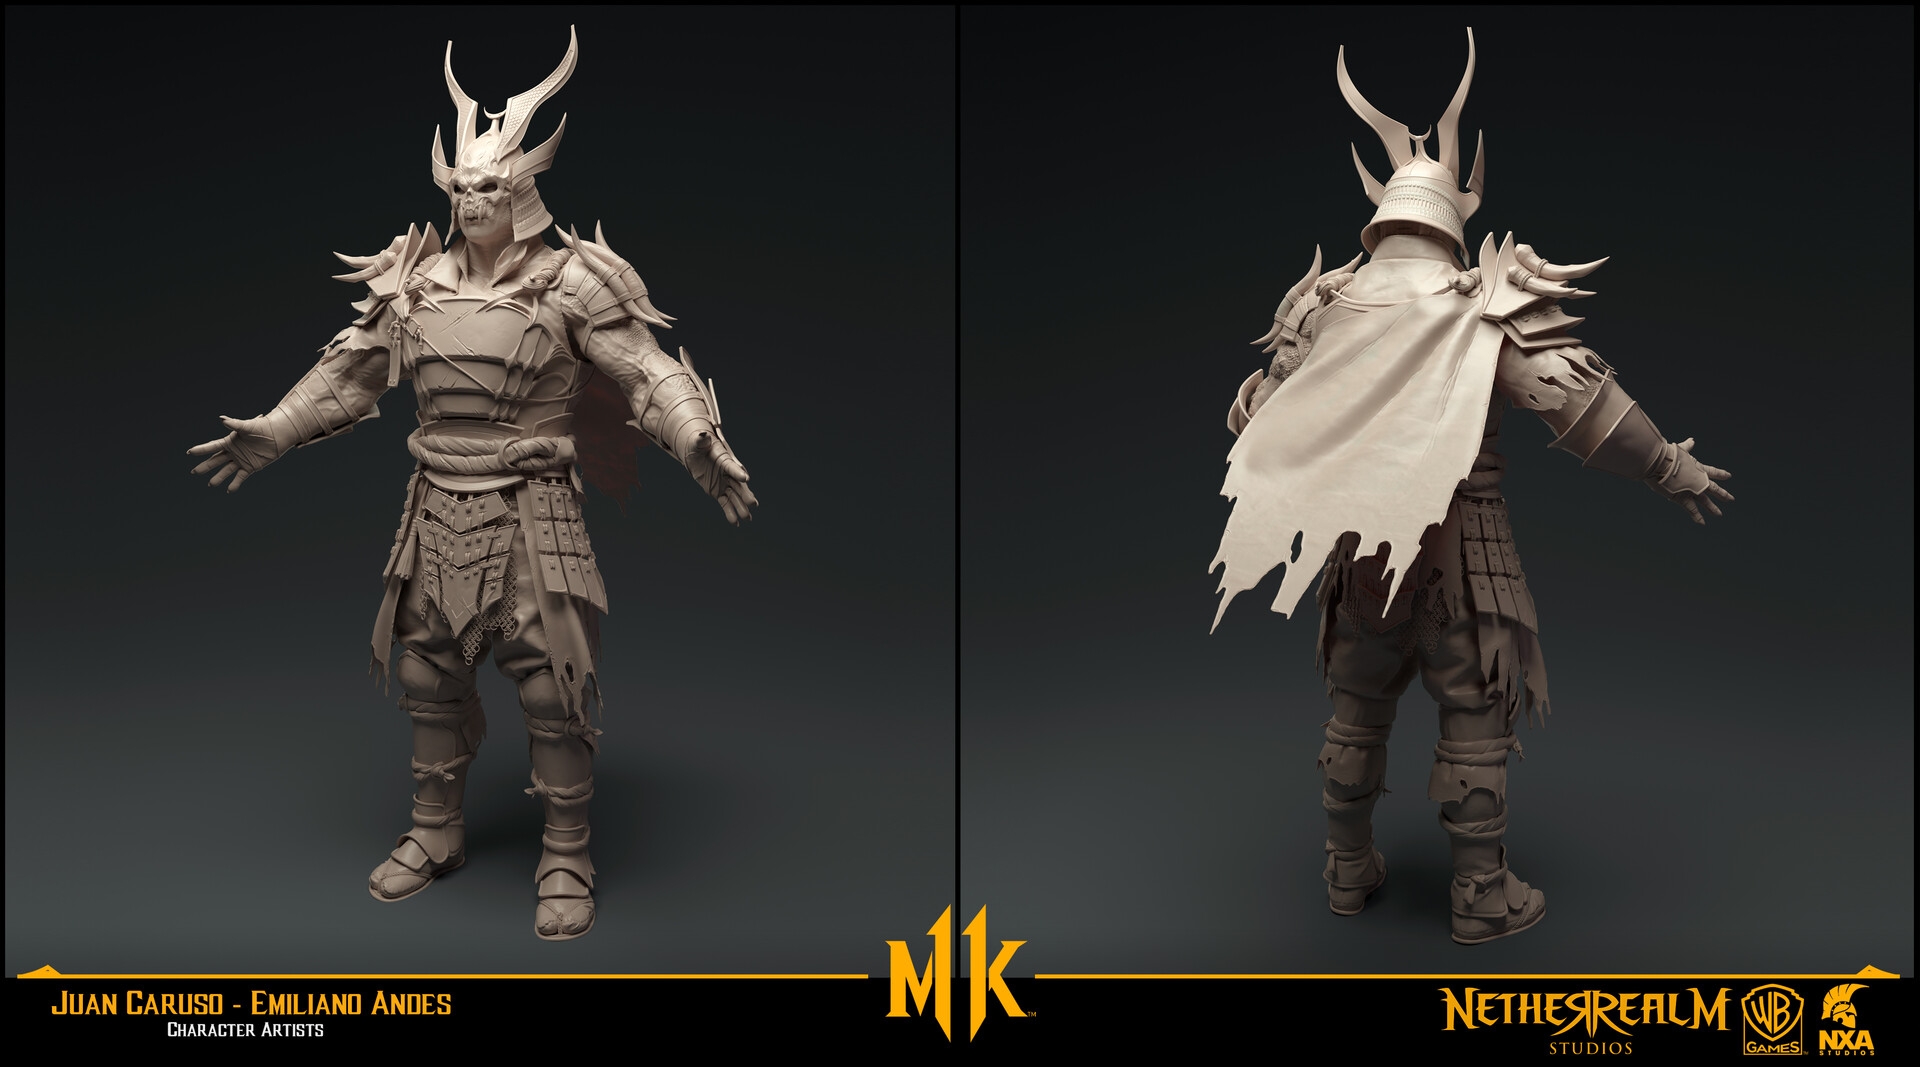 Mortal Kombat 11: artista revela aparência de Shao Kahn sem armadura, e-sportv